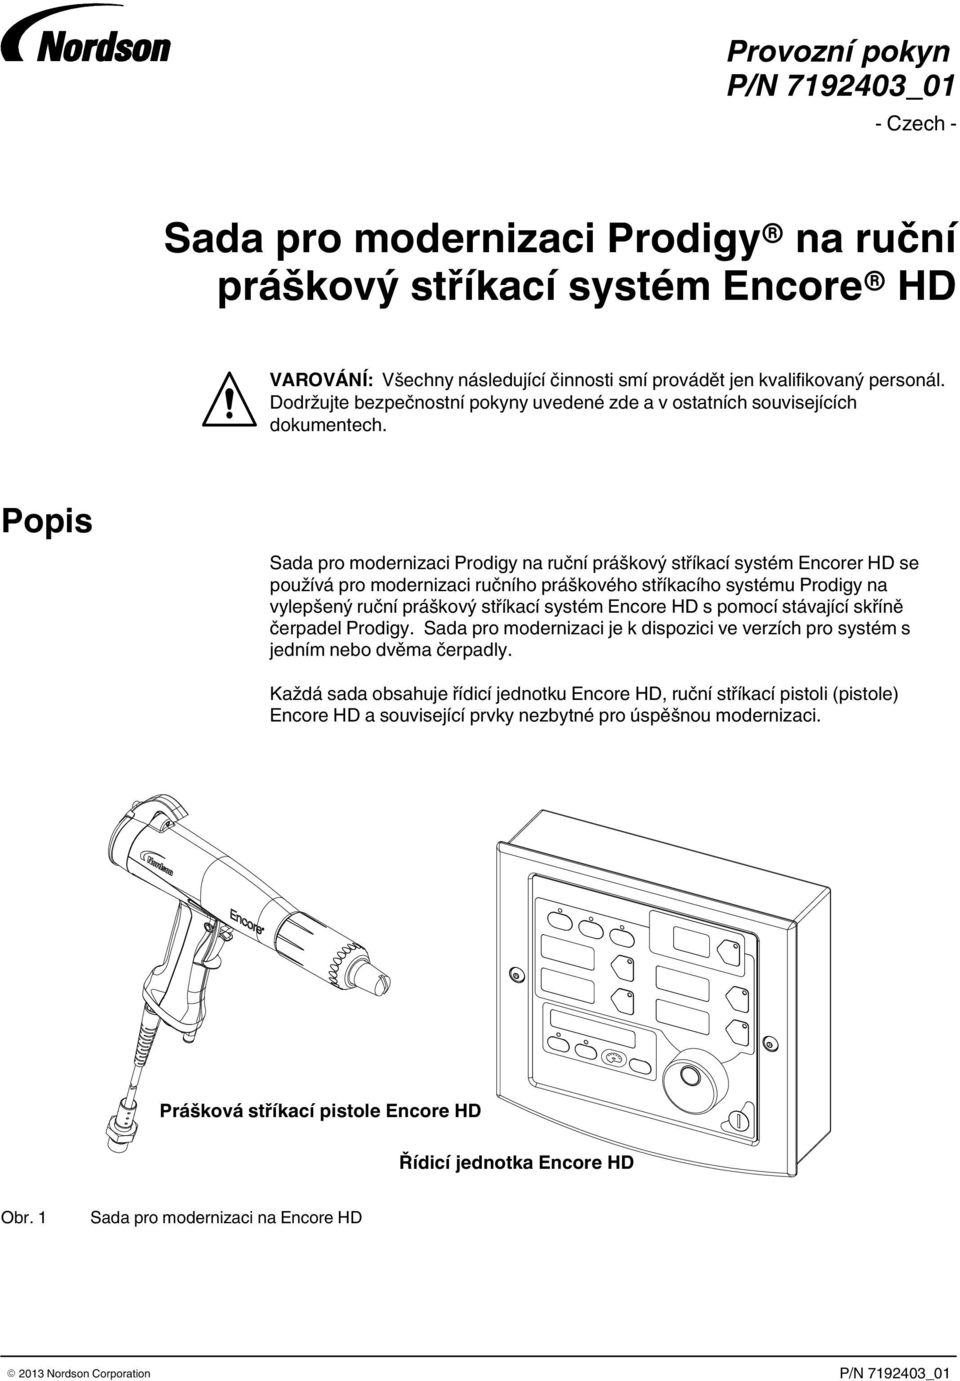 Popis se používá pro modernizaci ručního práškového stříkacího systému Prodigy na vylepšený ruční práškový stříkací systém Encore HD s pomocí stávající skříně čerpadel Prodigy.